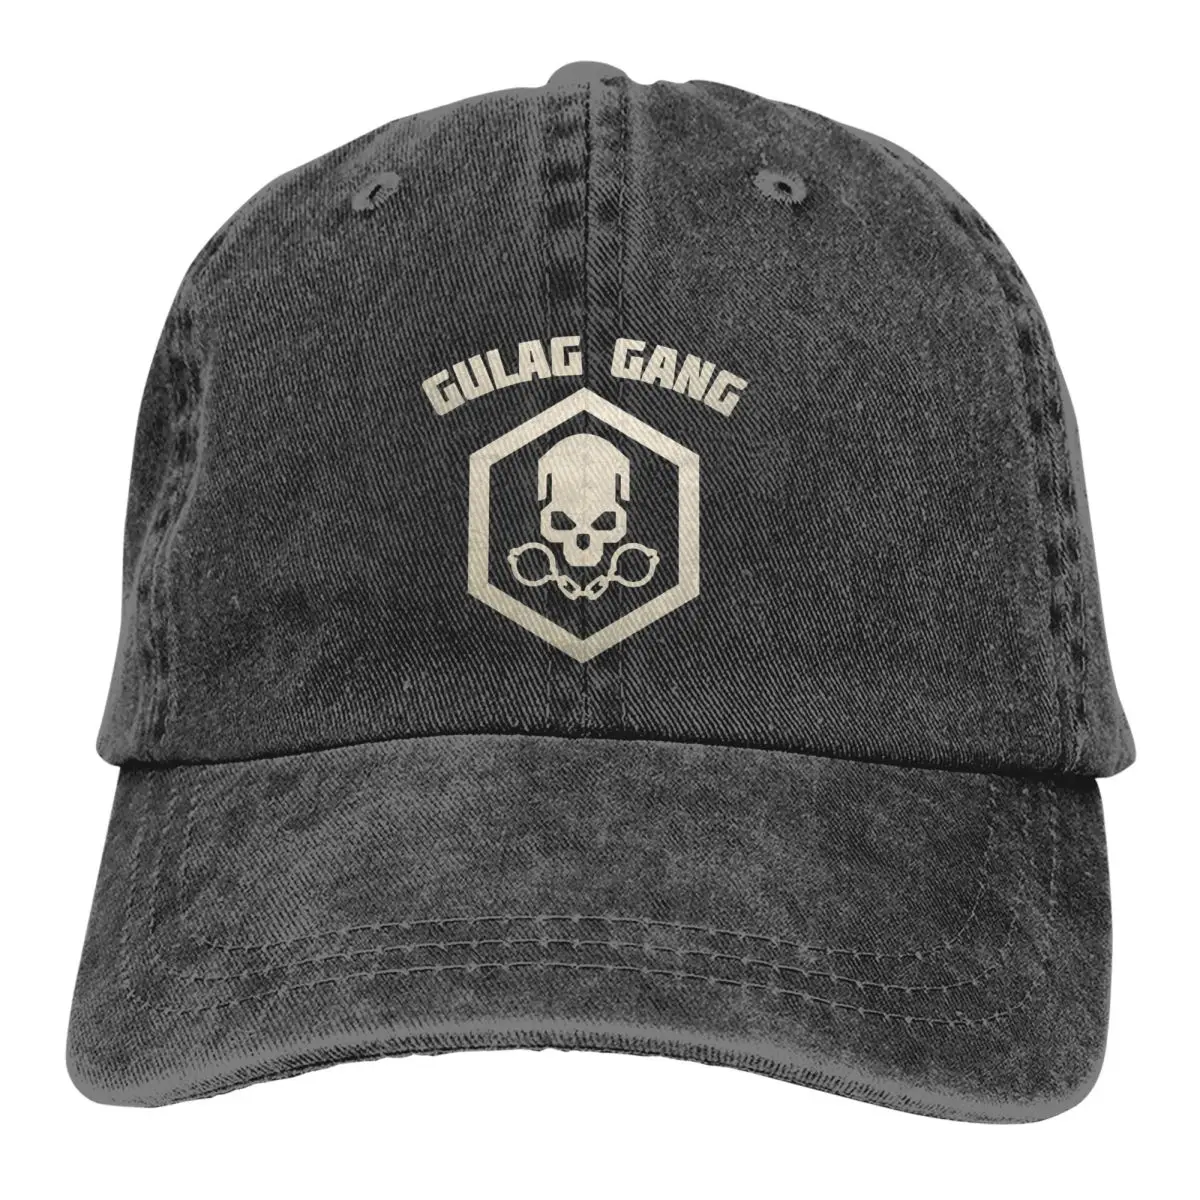 

Промытая Мужская бейсболка Warzone Gulag Gang классические, для водителя грузовика, Снэпбэк Кепка s, шапка для папы, черная, Ops, шапки для гольфа холод...